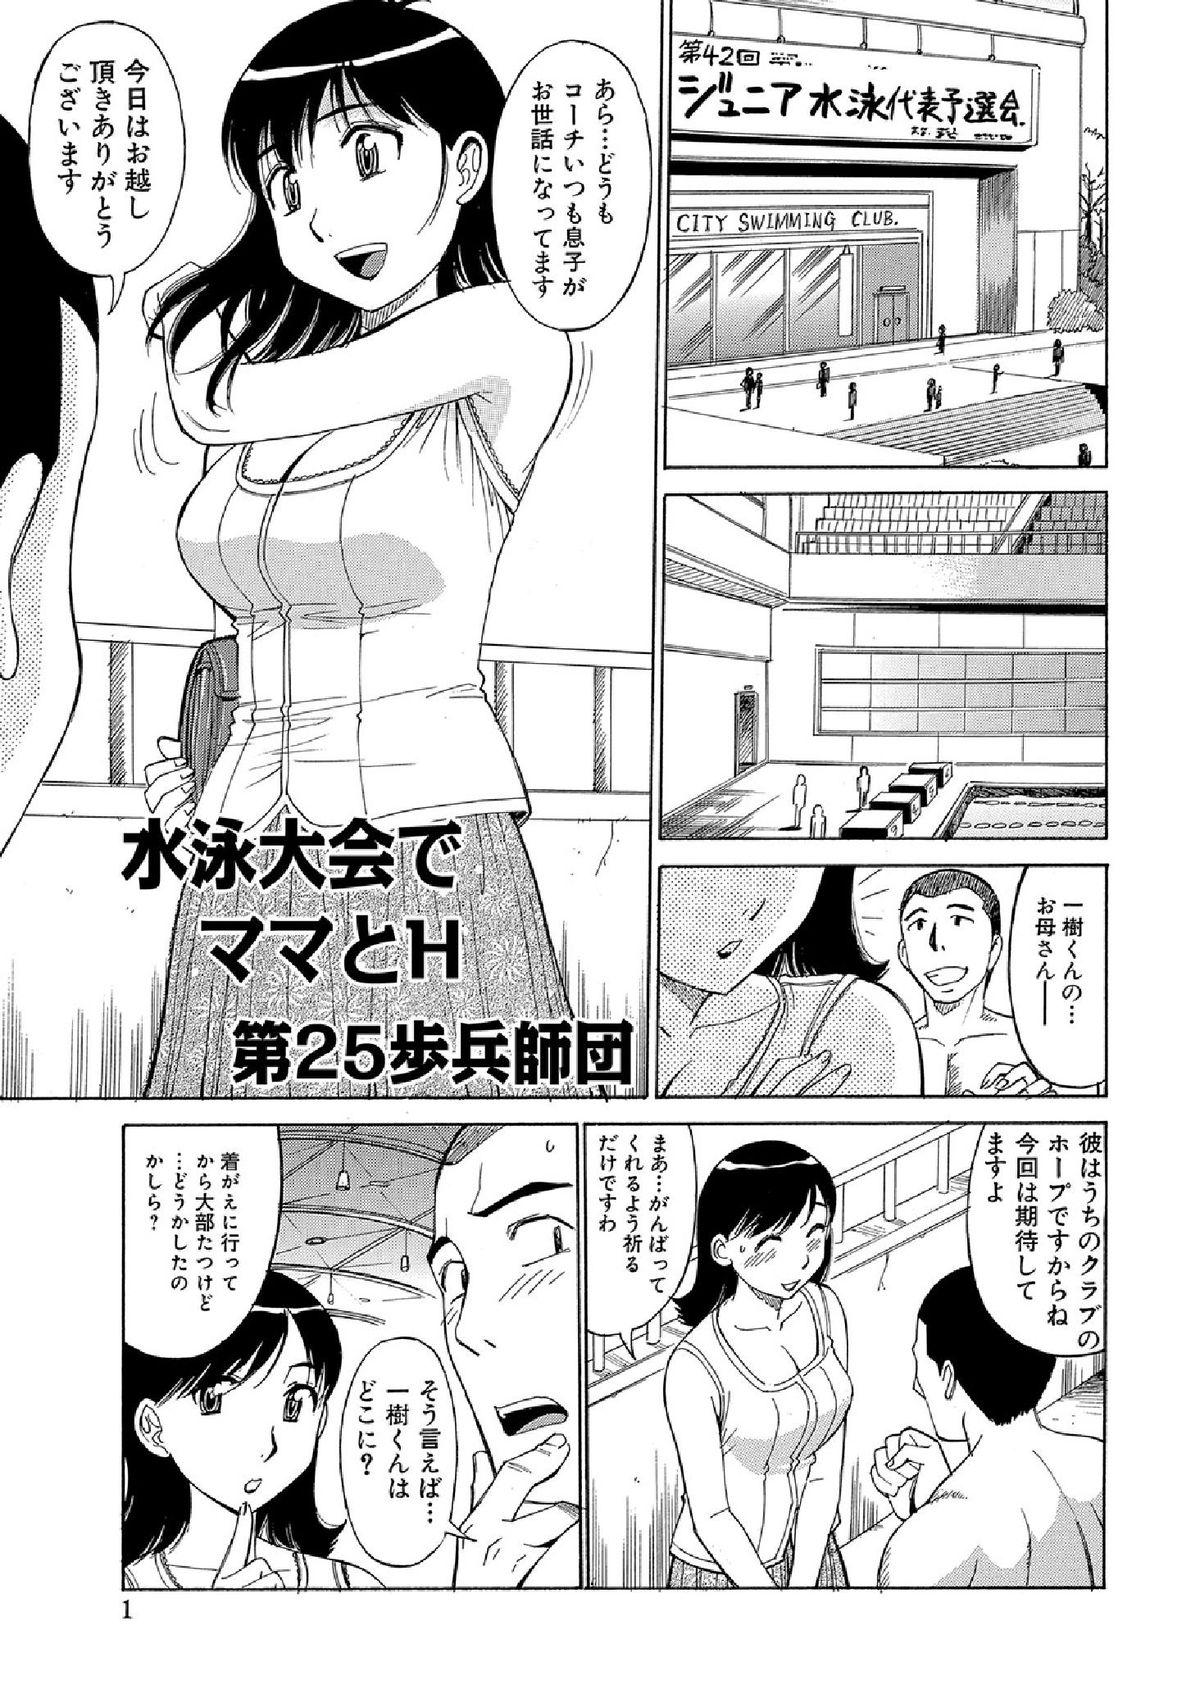 WEB Han Comic Geki Yaba! Vol.52 283